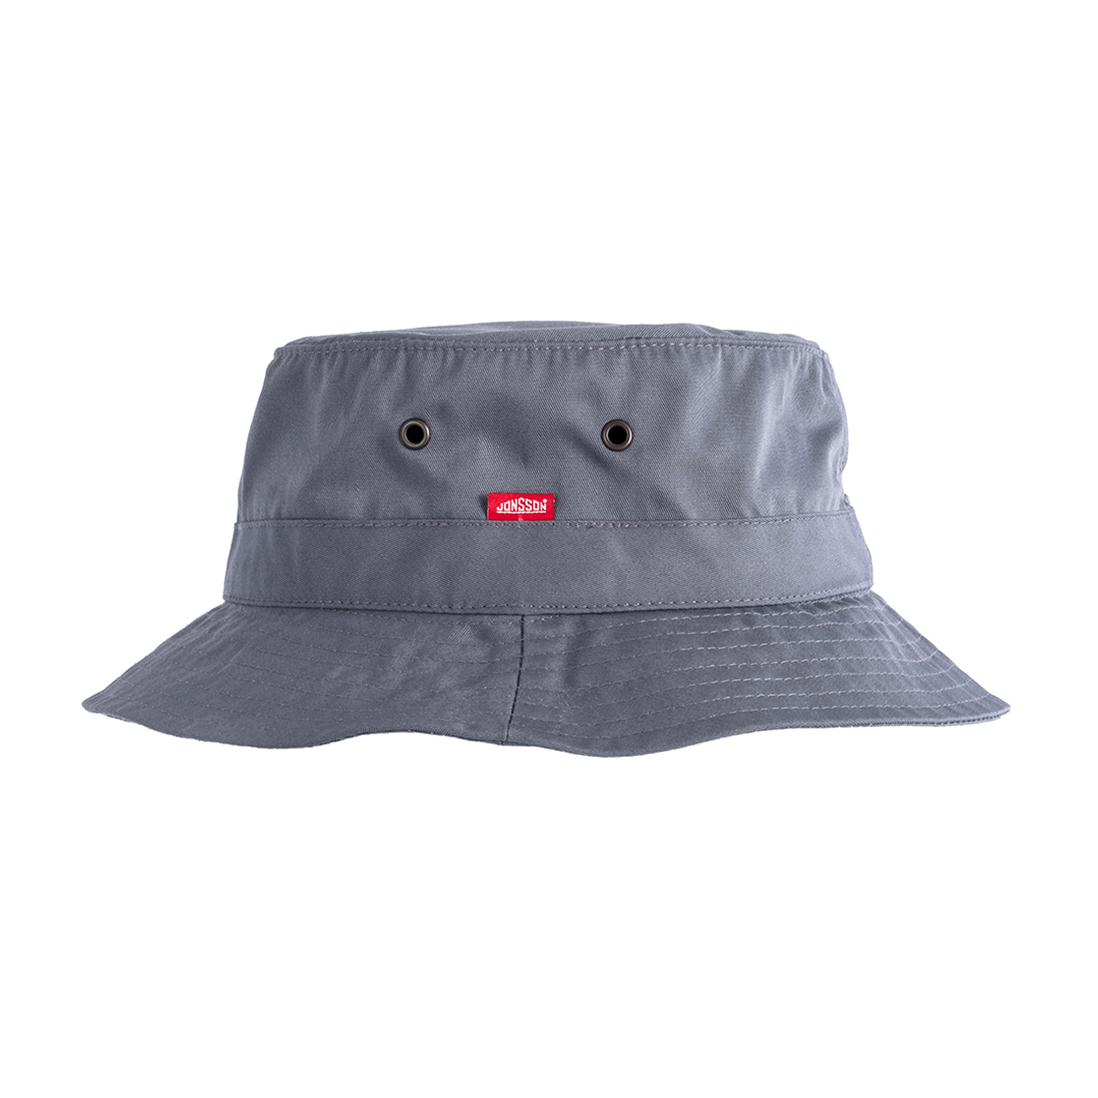 Jonsson Workwear | Versatex Hat